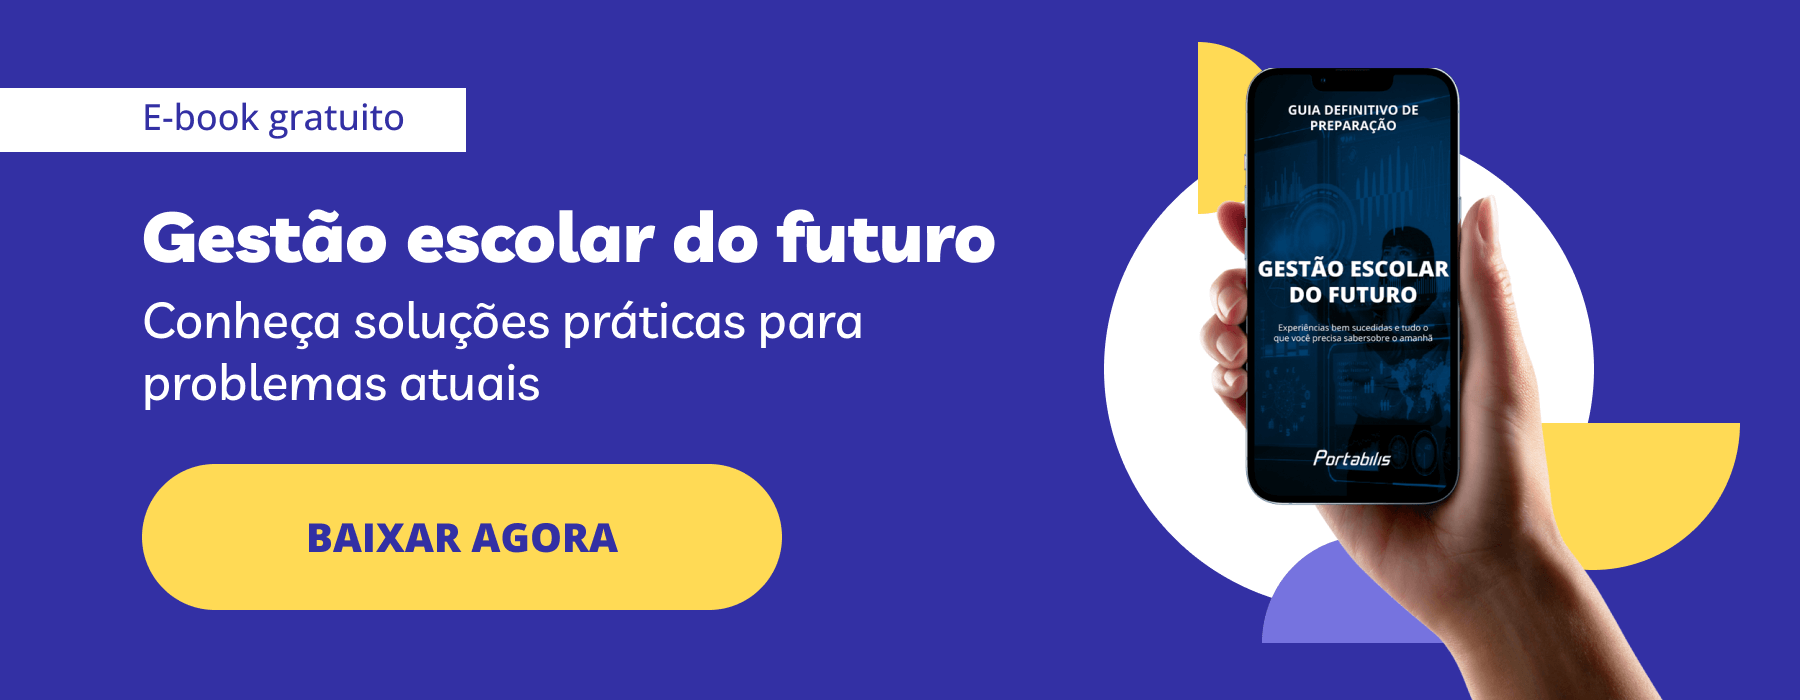 E-book gratuito: Gestão Escolar do Futuro. Material sobre soluções práticas para problemas atuais das escolas. 